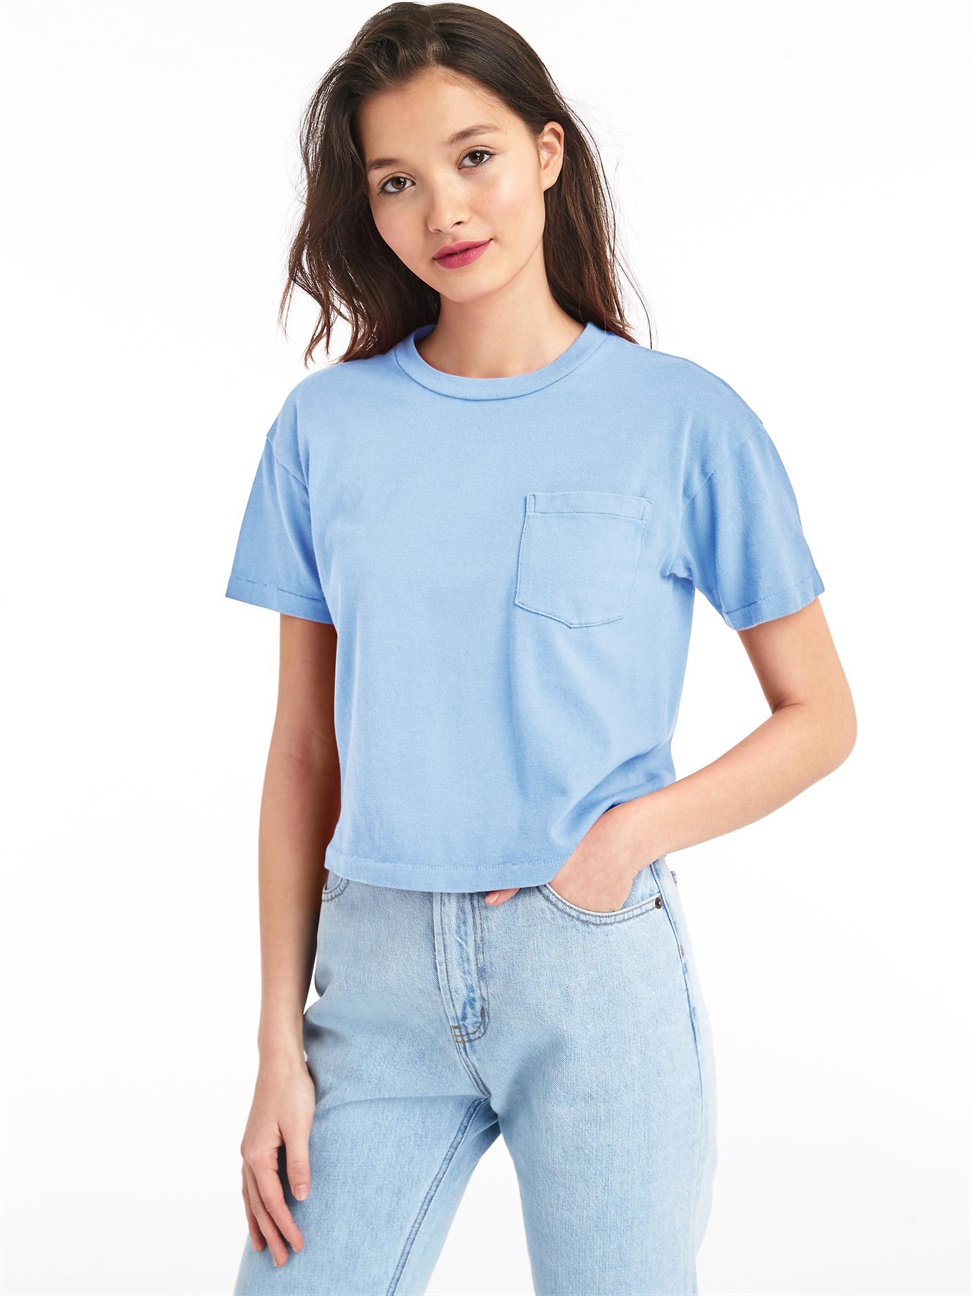 女裝|純棉口袋短袖T恤-藍灰